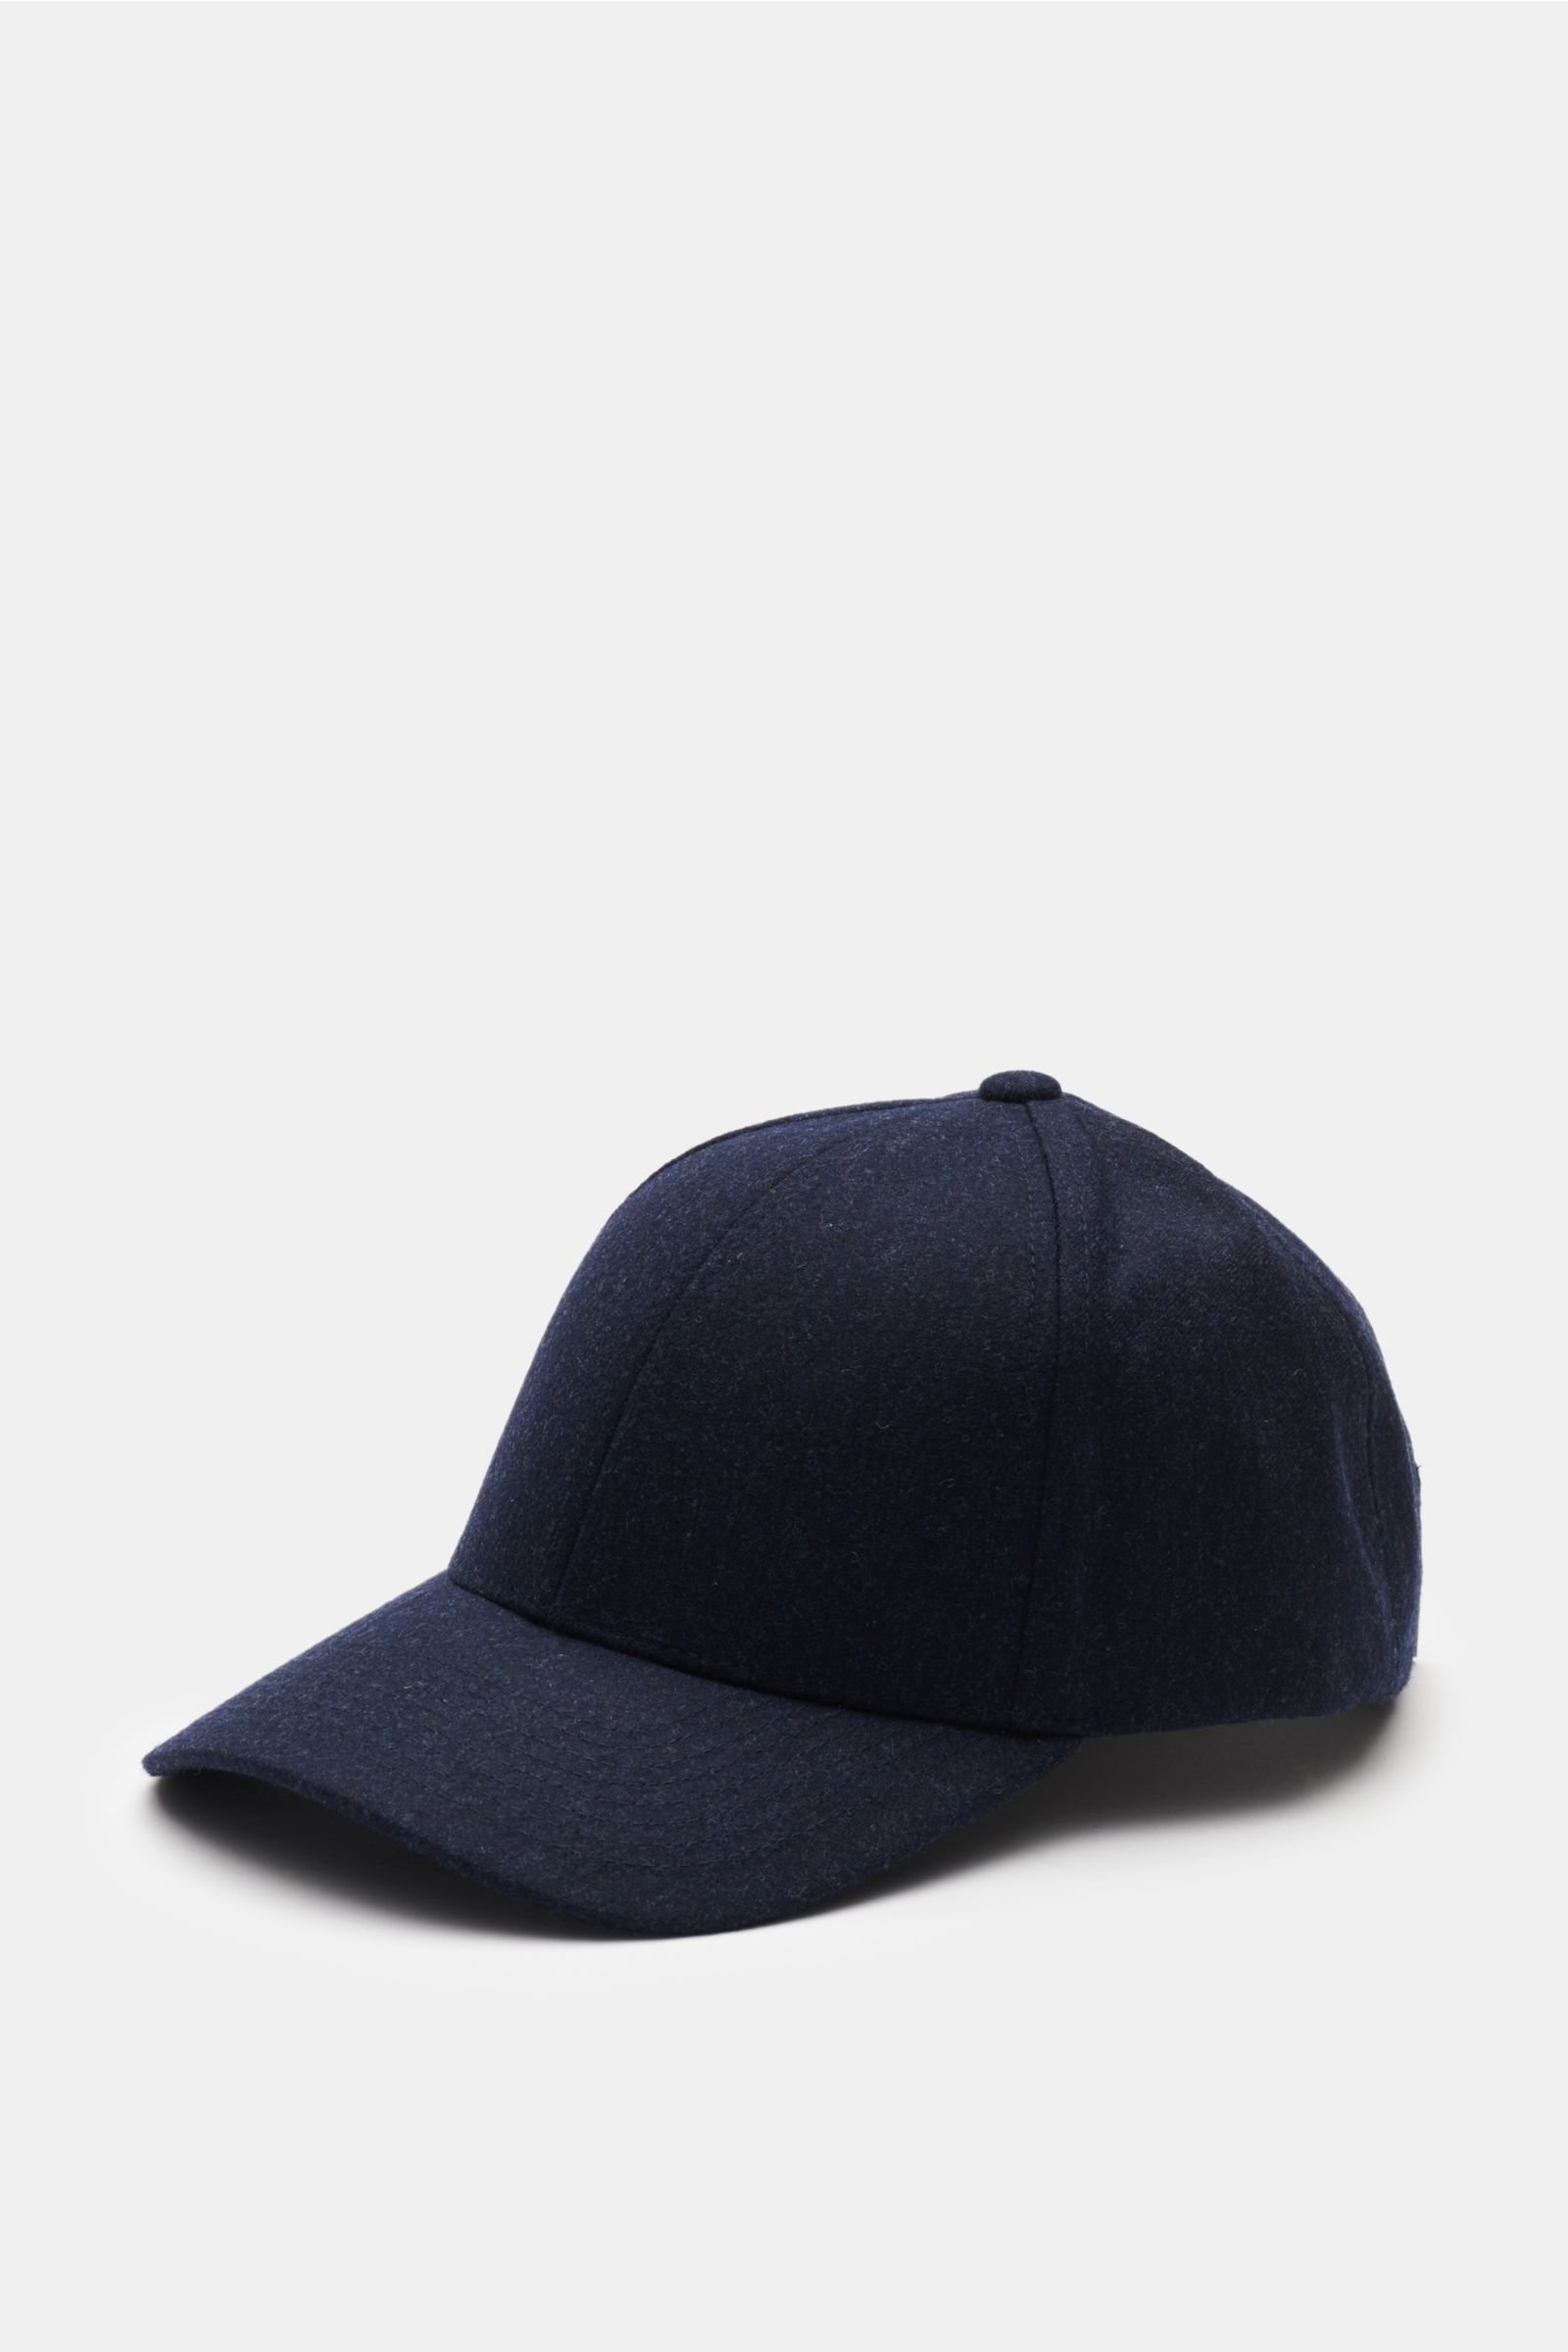 Baseball cap 'Dark Navy Wool' navy